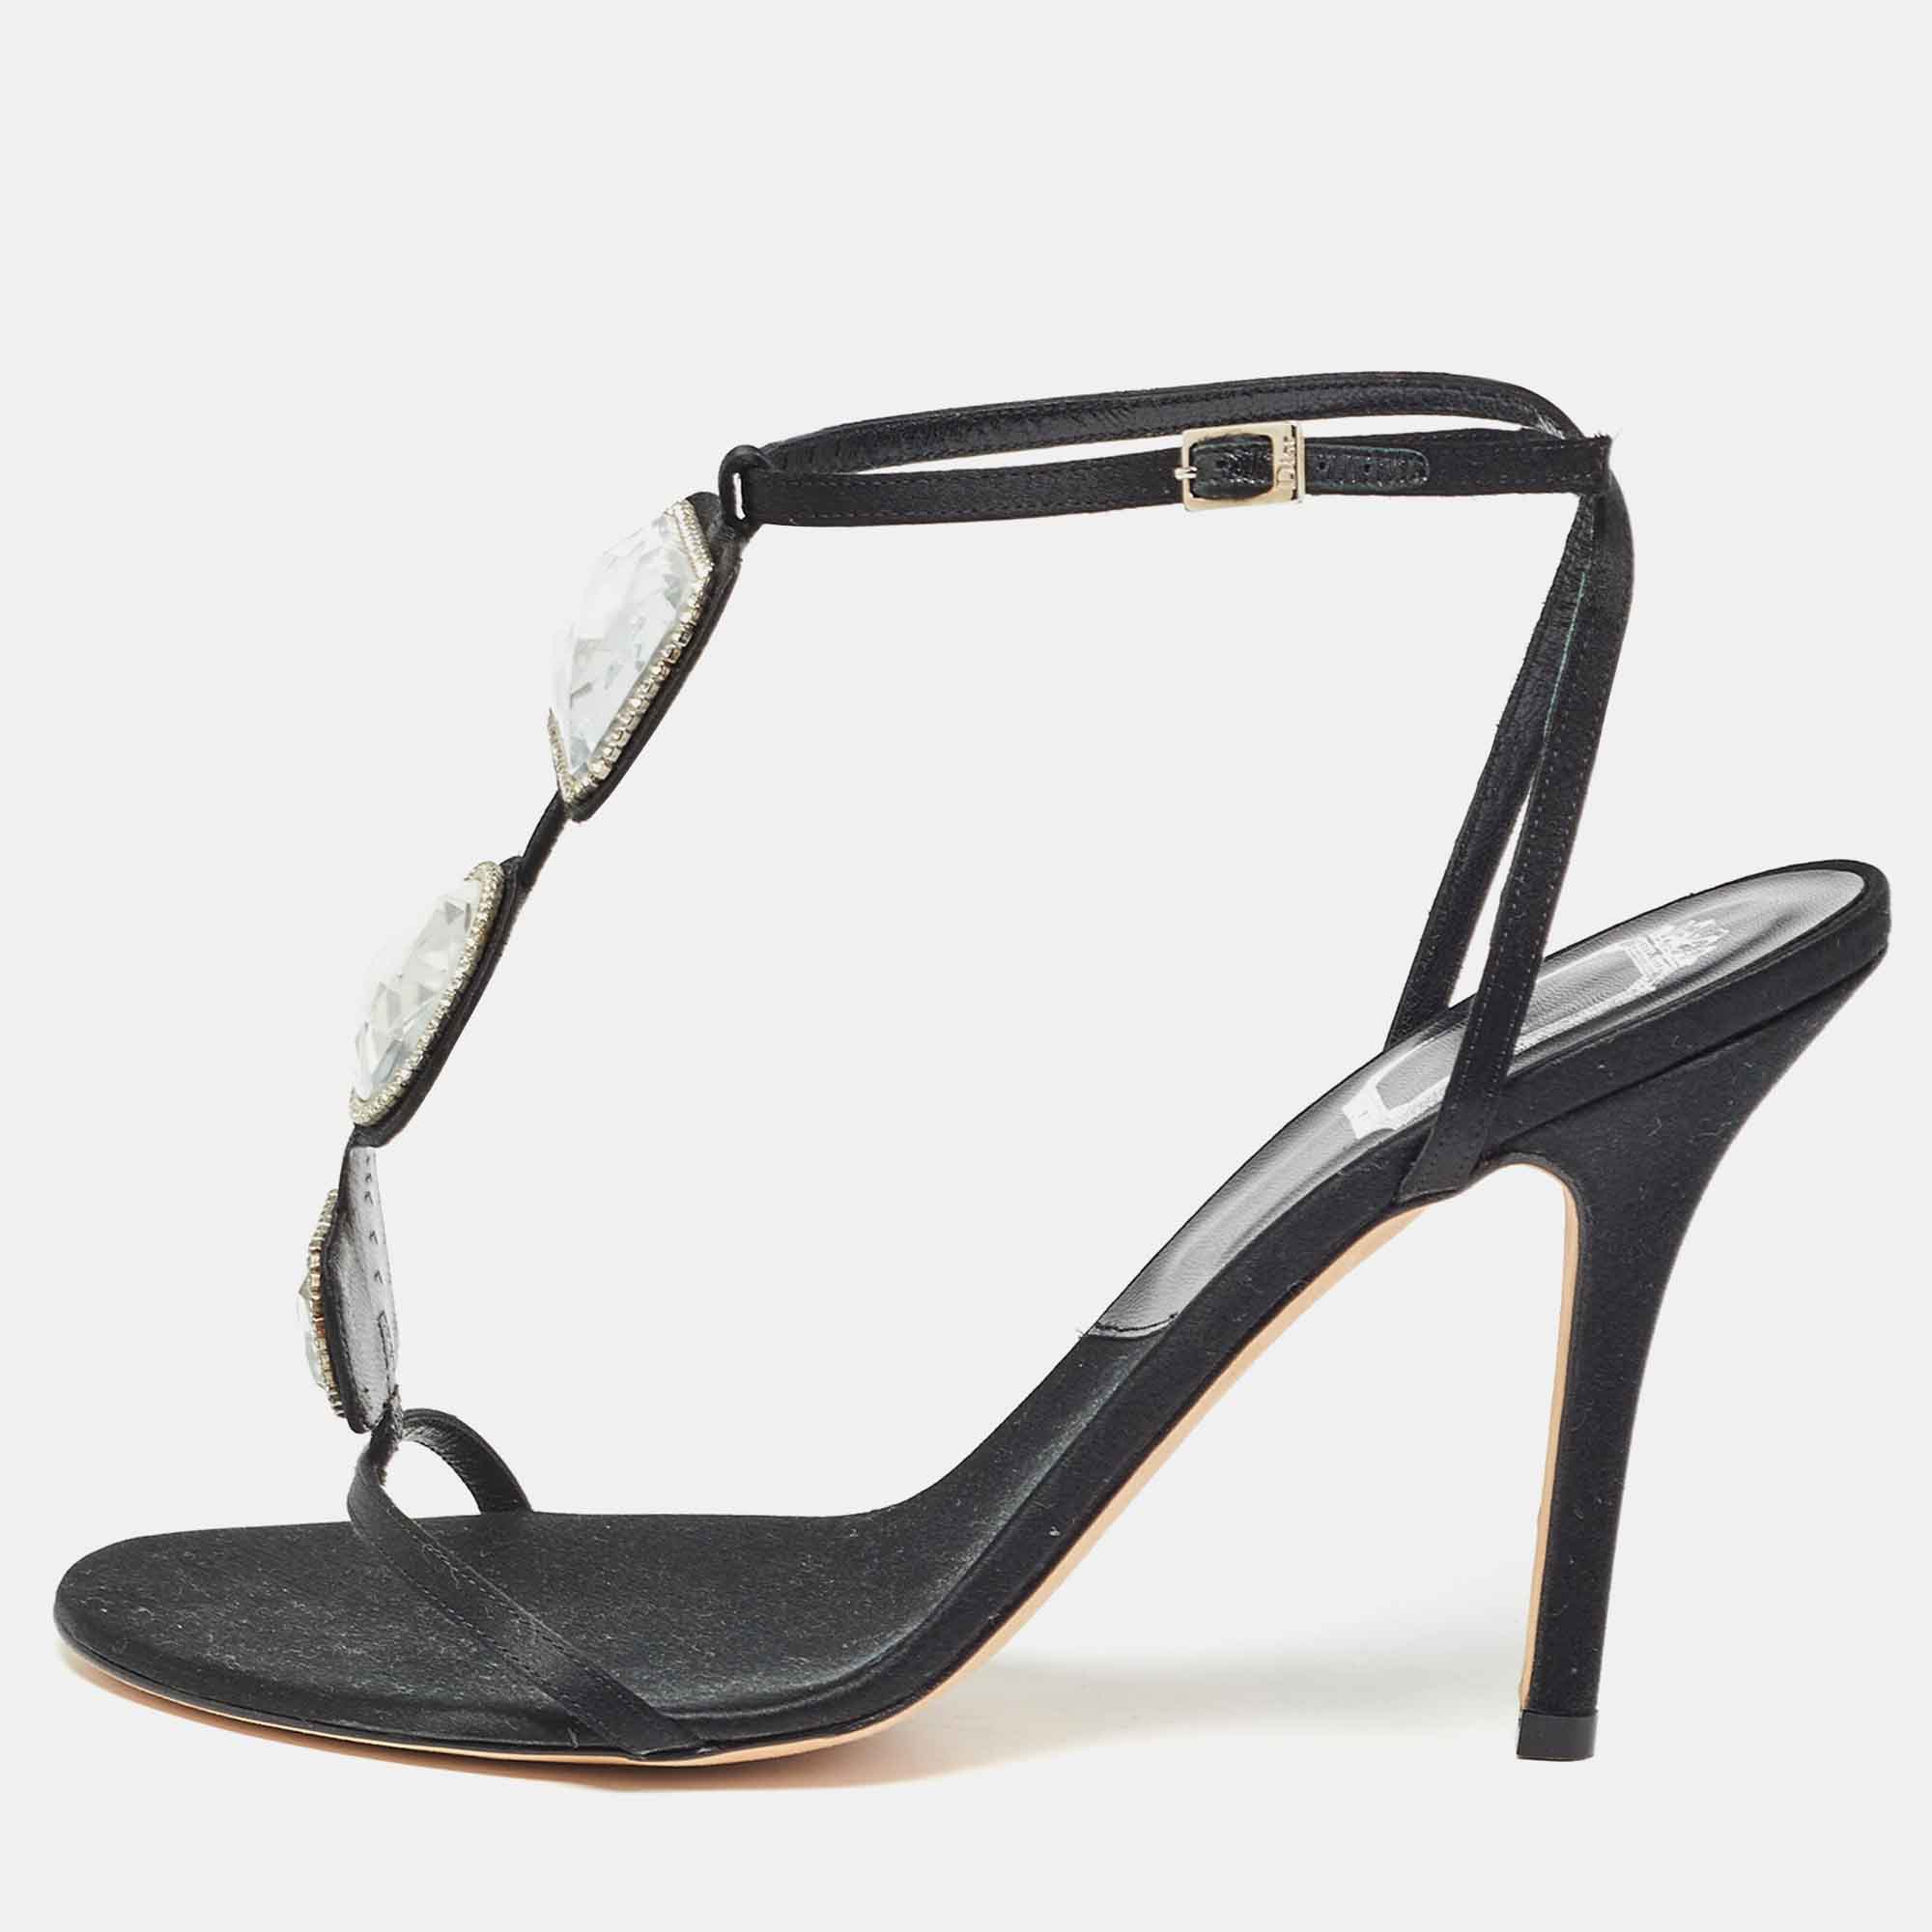 Dior black satin crystal embellished ankle strap sandals size 39.5